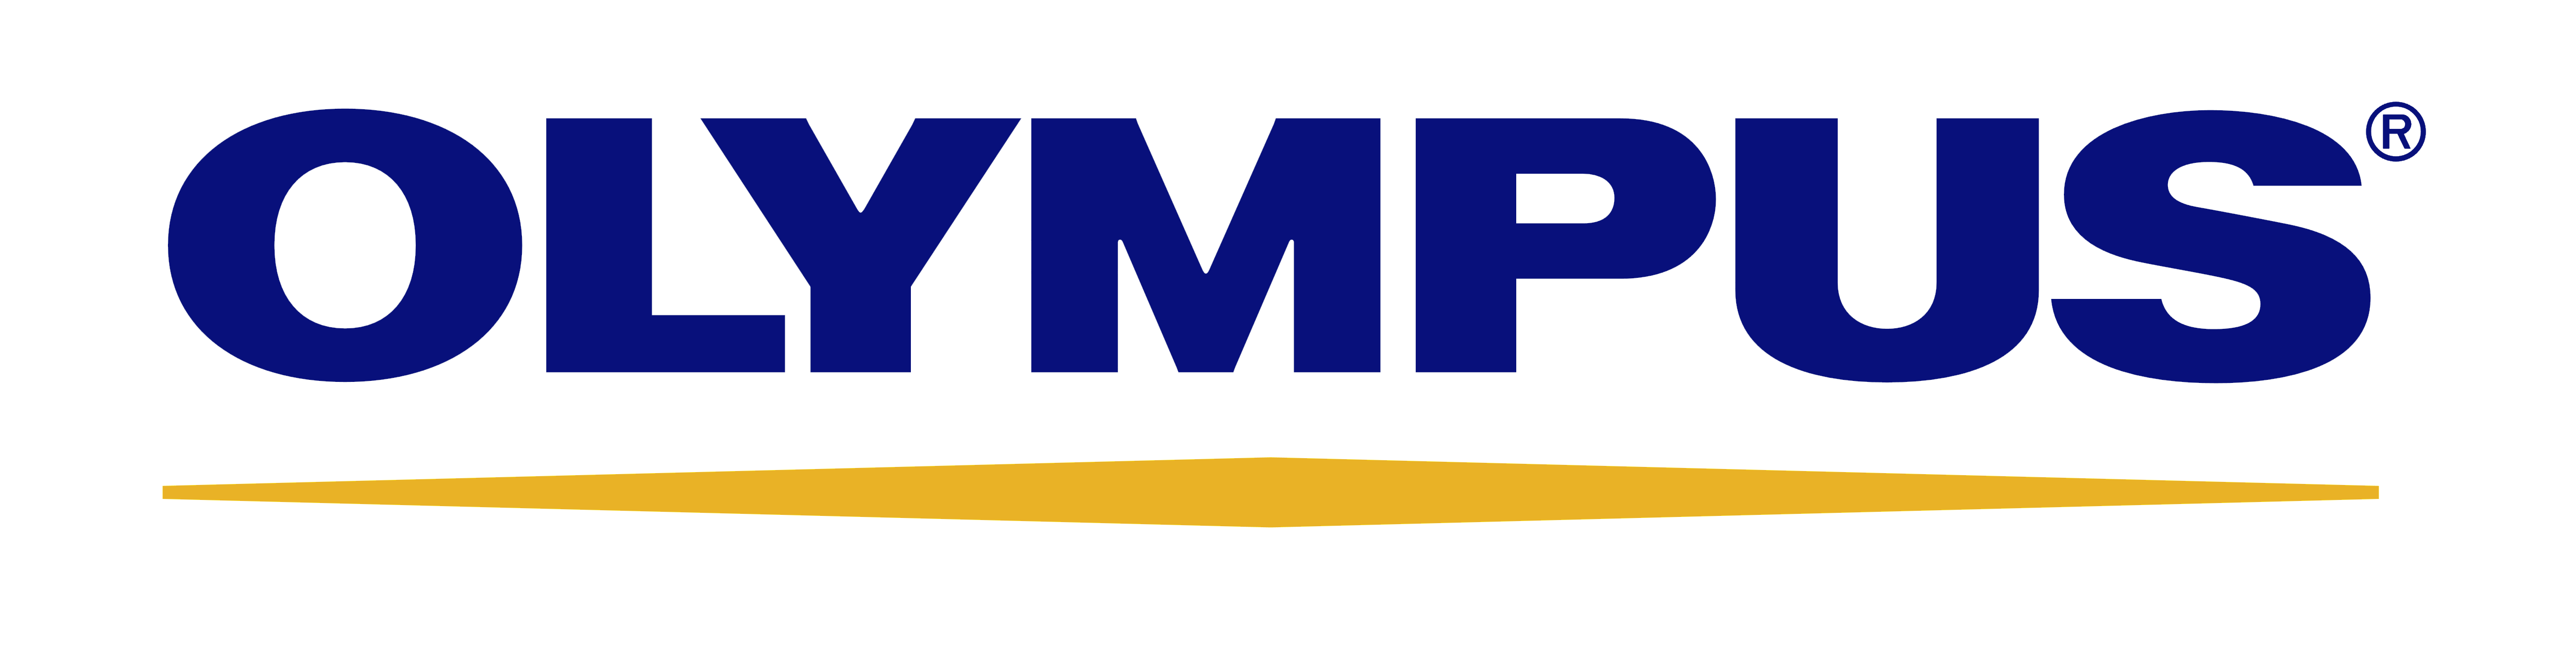 Olympus Logo - Olympus – Logos Download